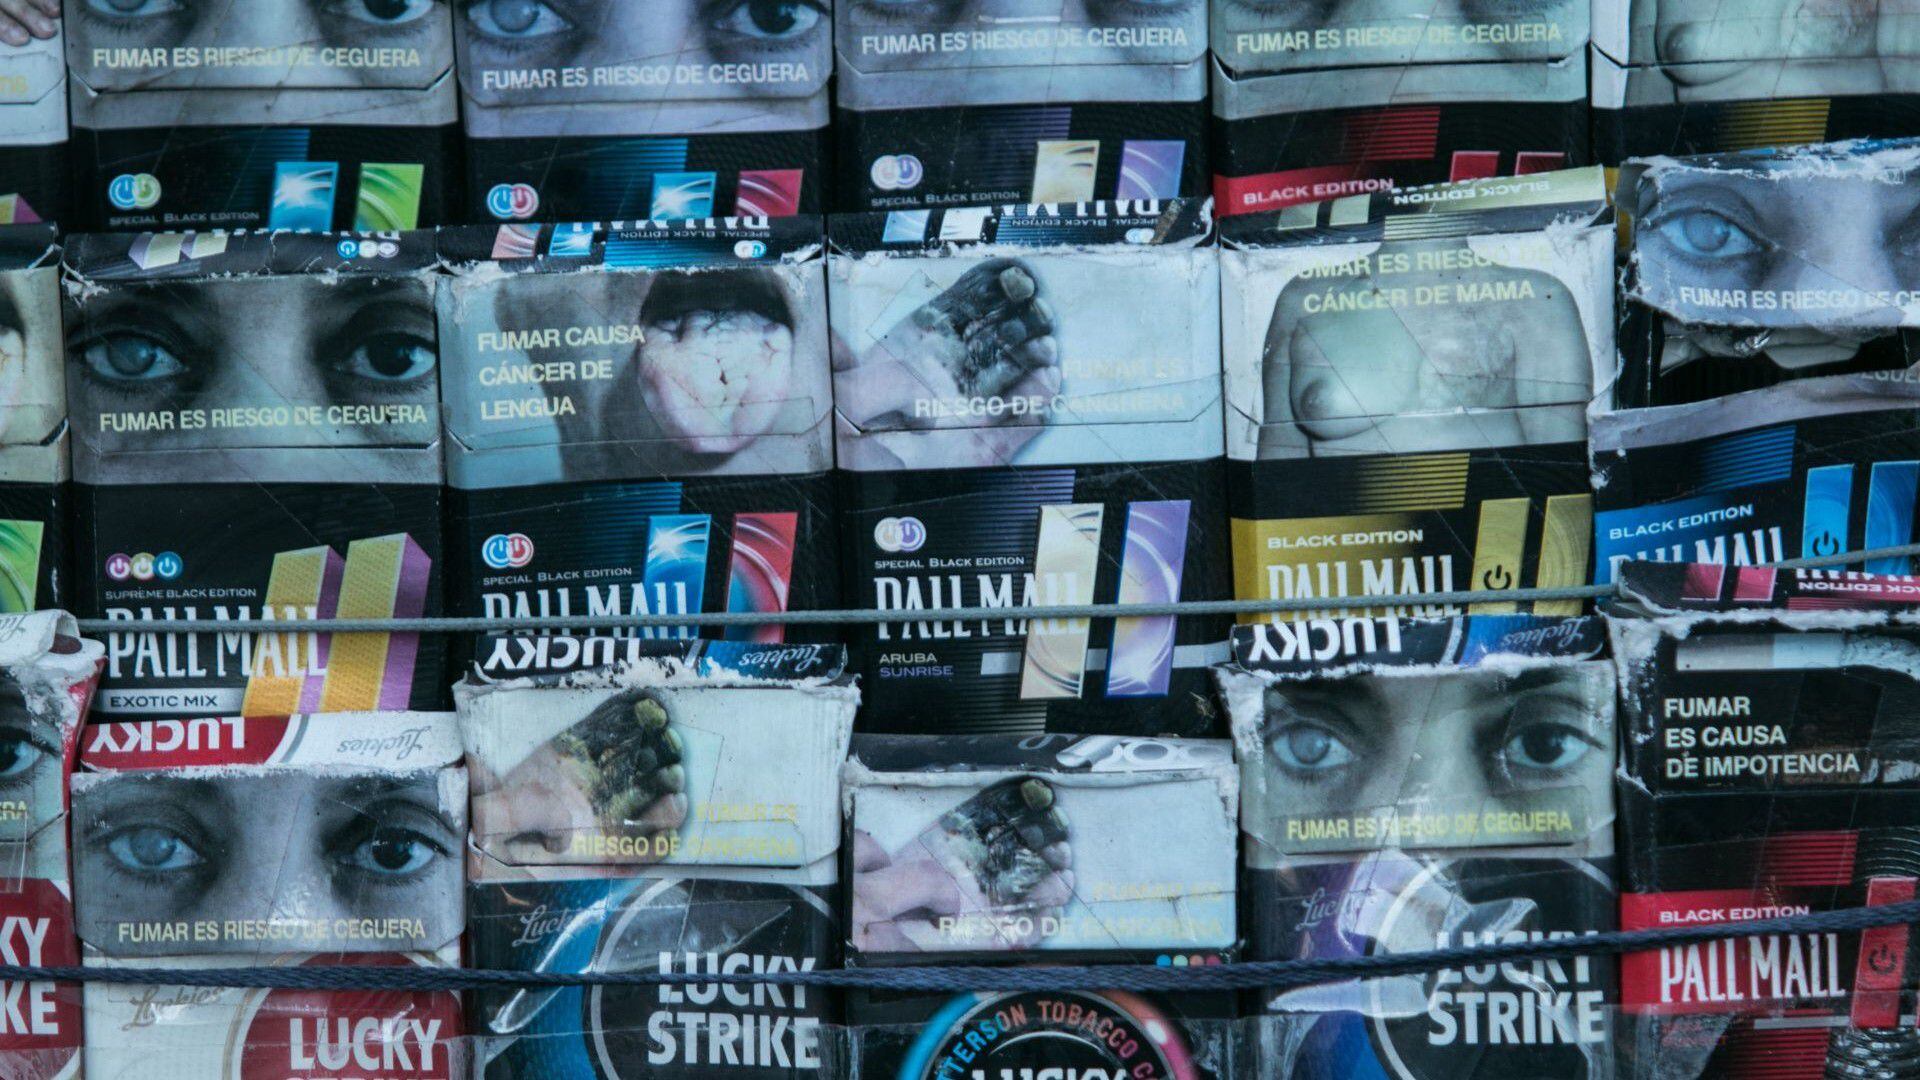 La tabacalera tiene a su cargo marcas como: Pall Mall, Lucky Strike, Kent, Montana Shots, Bohemios y Gol. (Foto: Cuartoscuro)